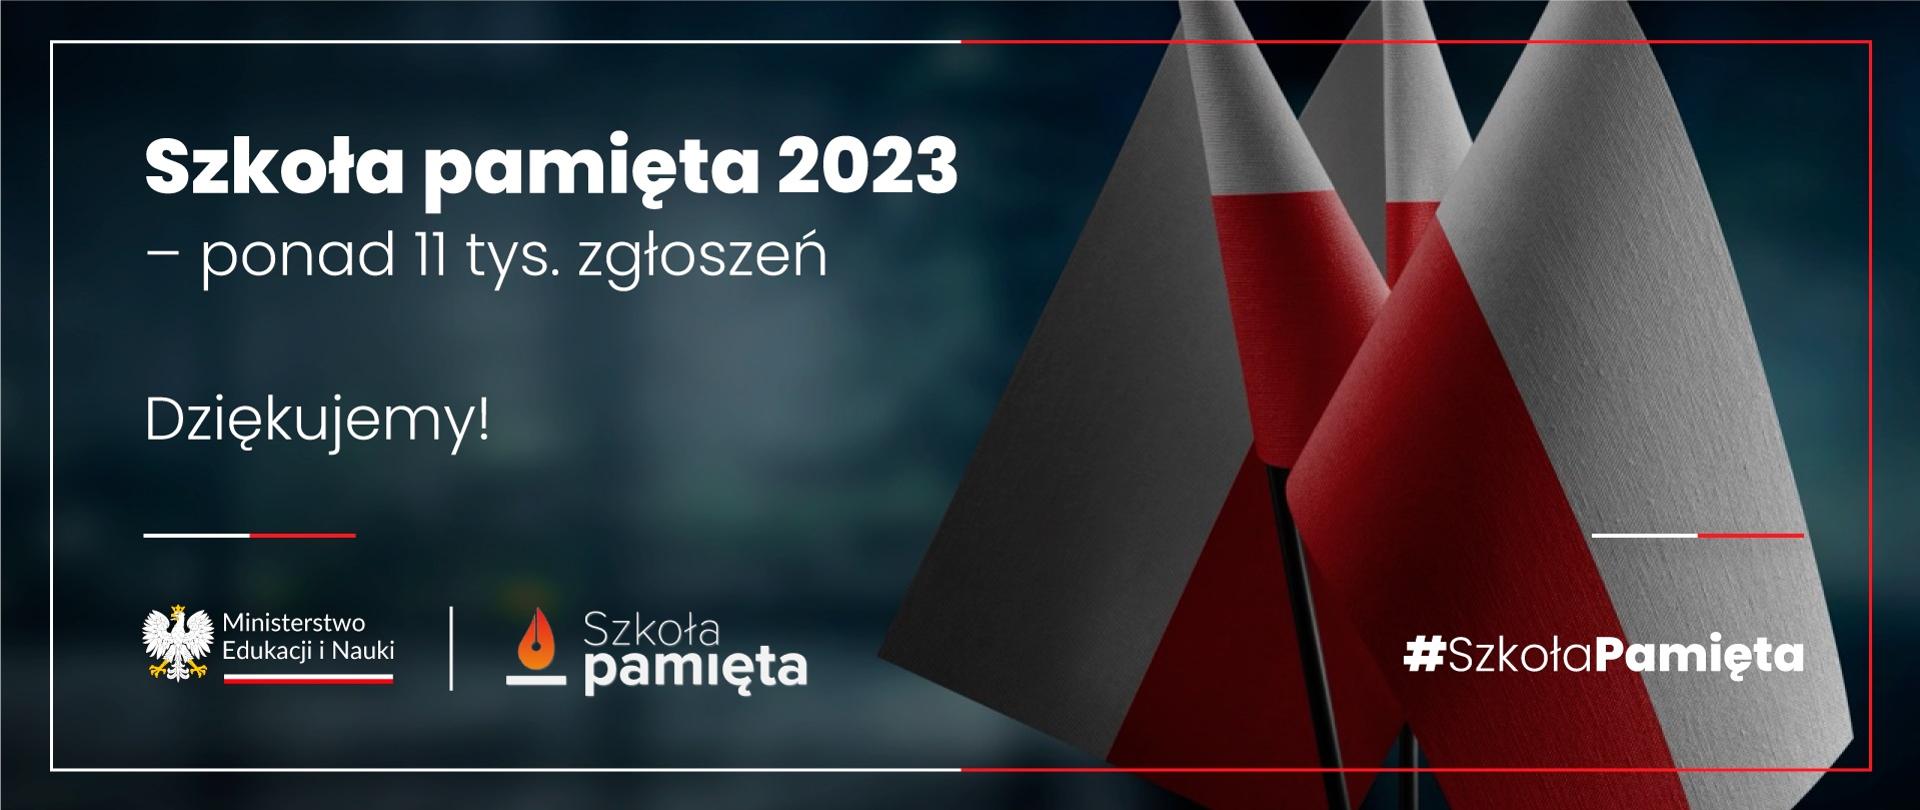 Grafika - na szaroniebieskim tle dwie polskie flagi, obok napis Szkoła pamięta 2023 - ponad 11 tys. zgłoszeń.